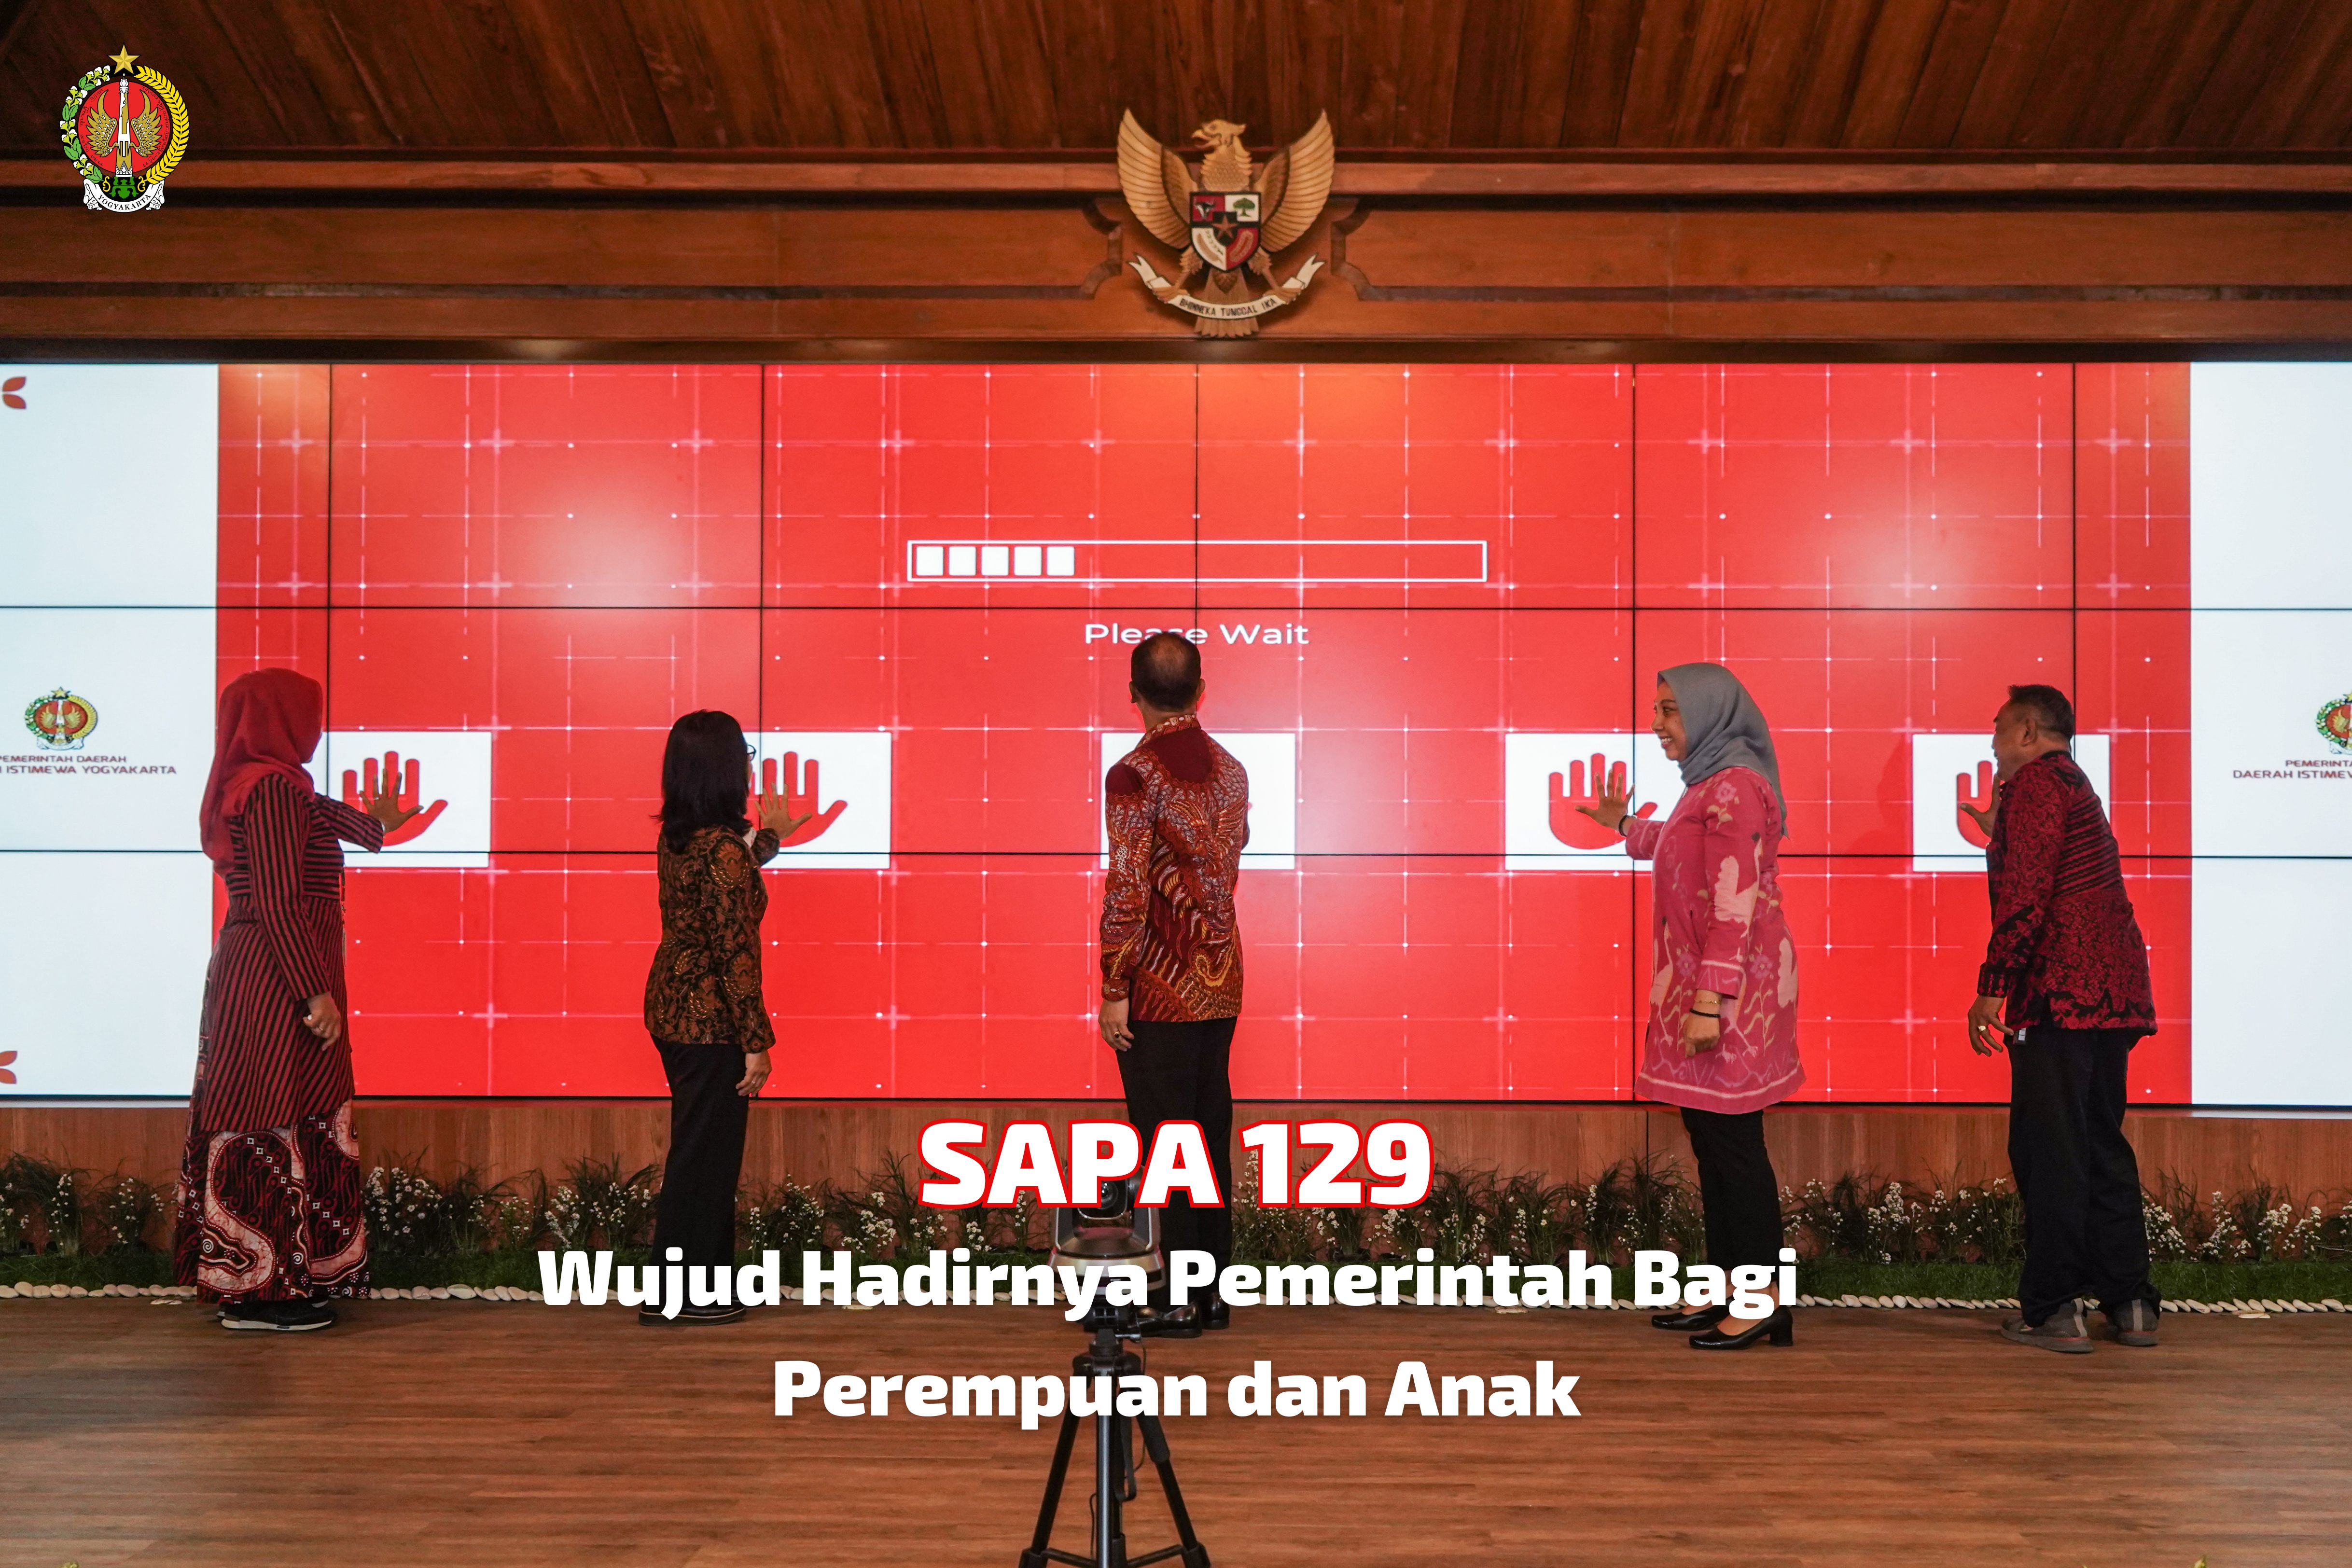 SAPA 129 Wujud Hadirnya Pemerintah Bagi Perempuan dan Anak